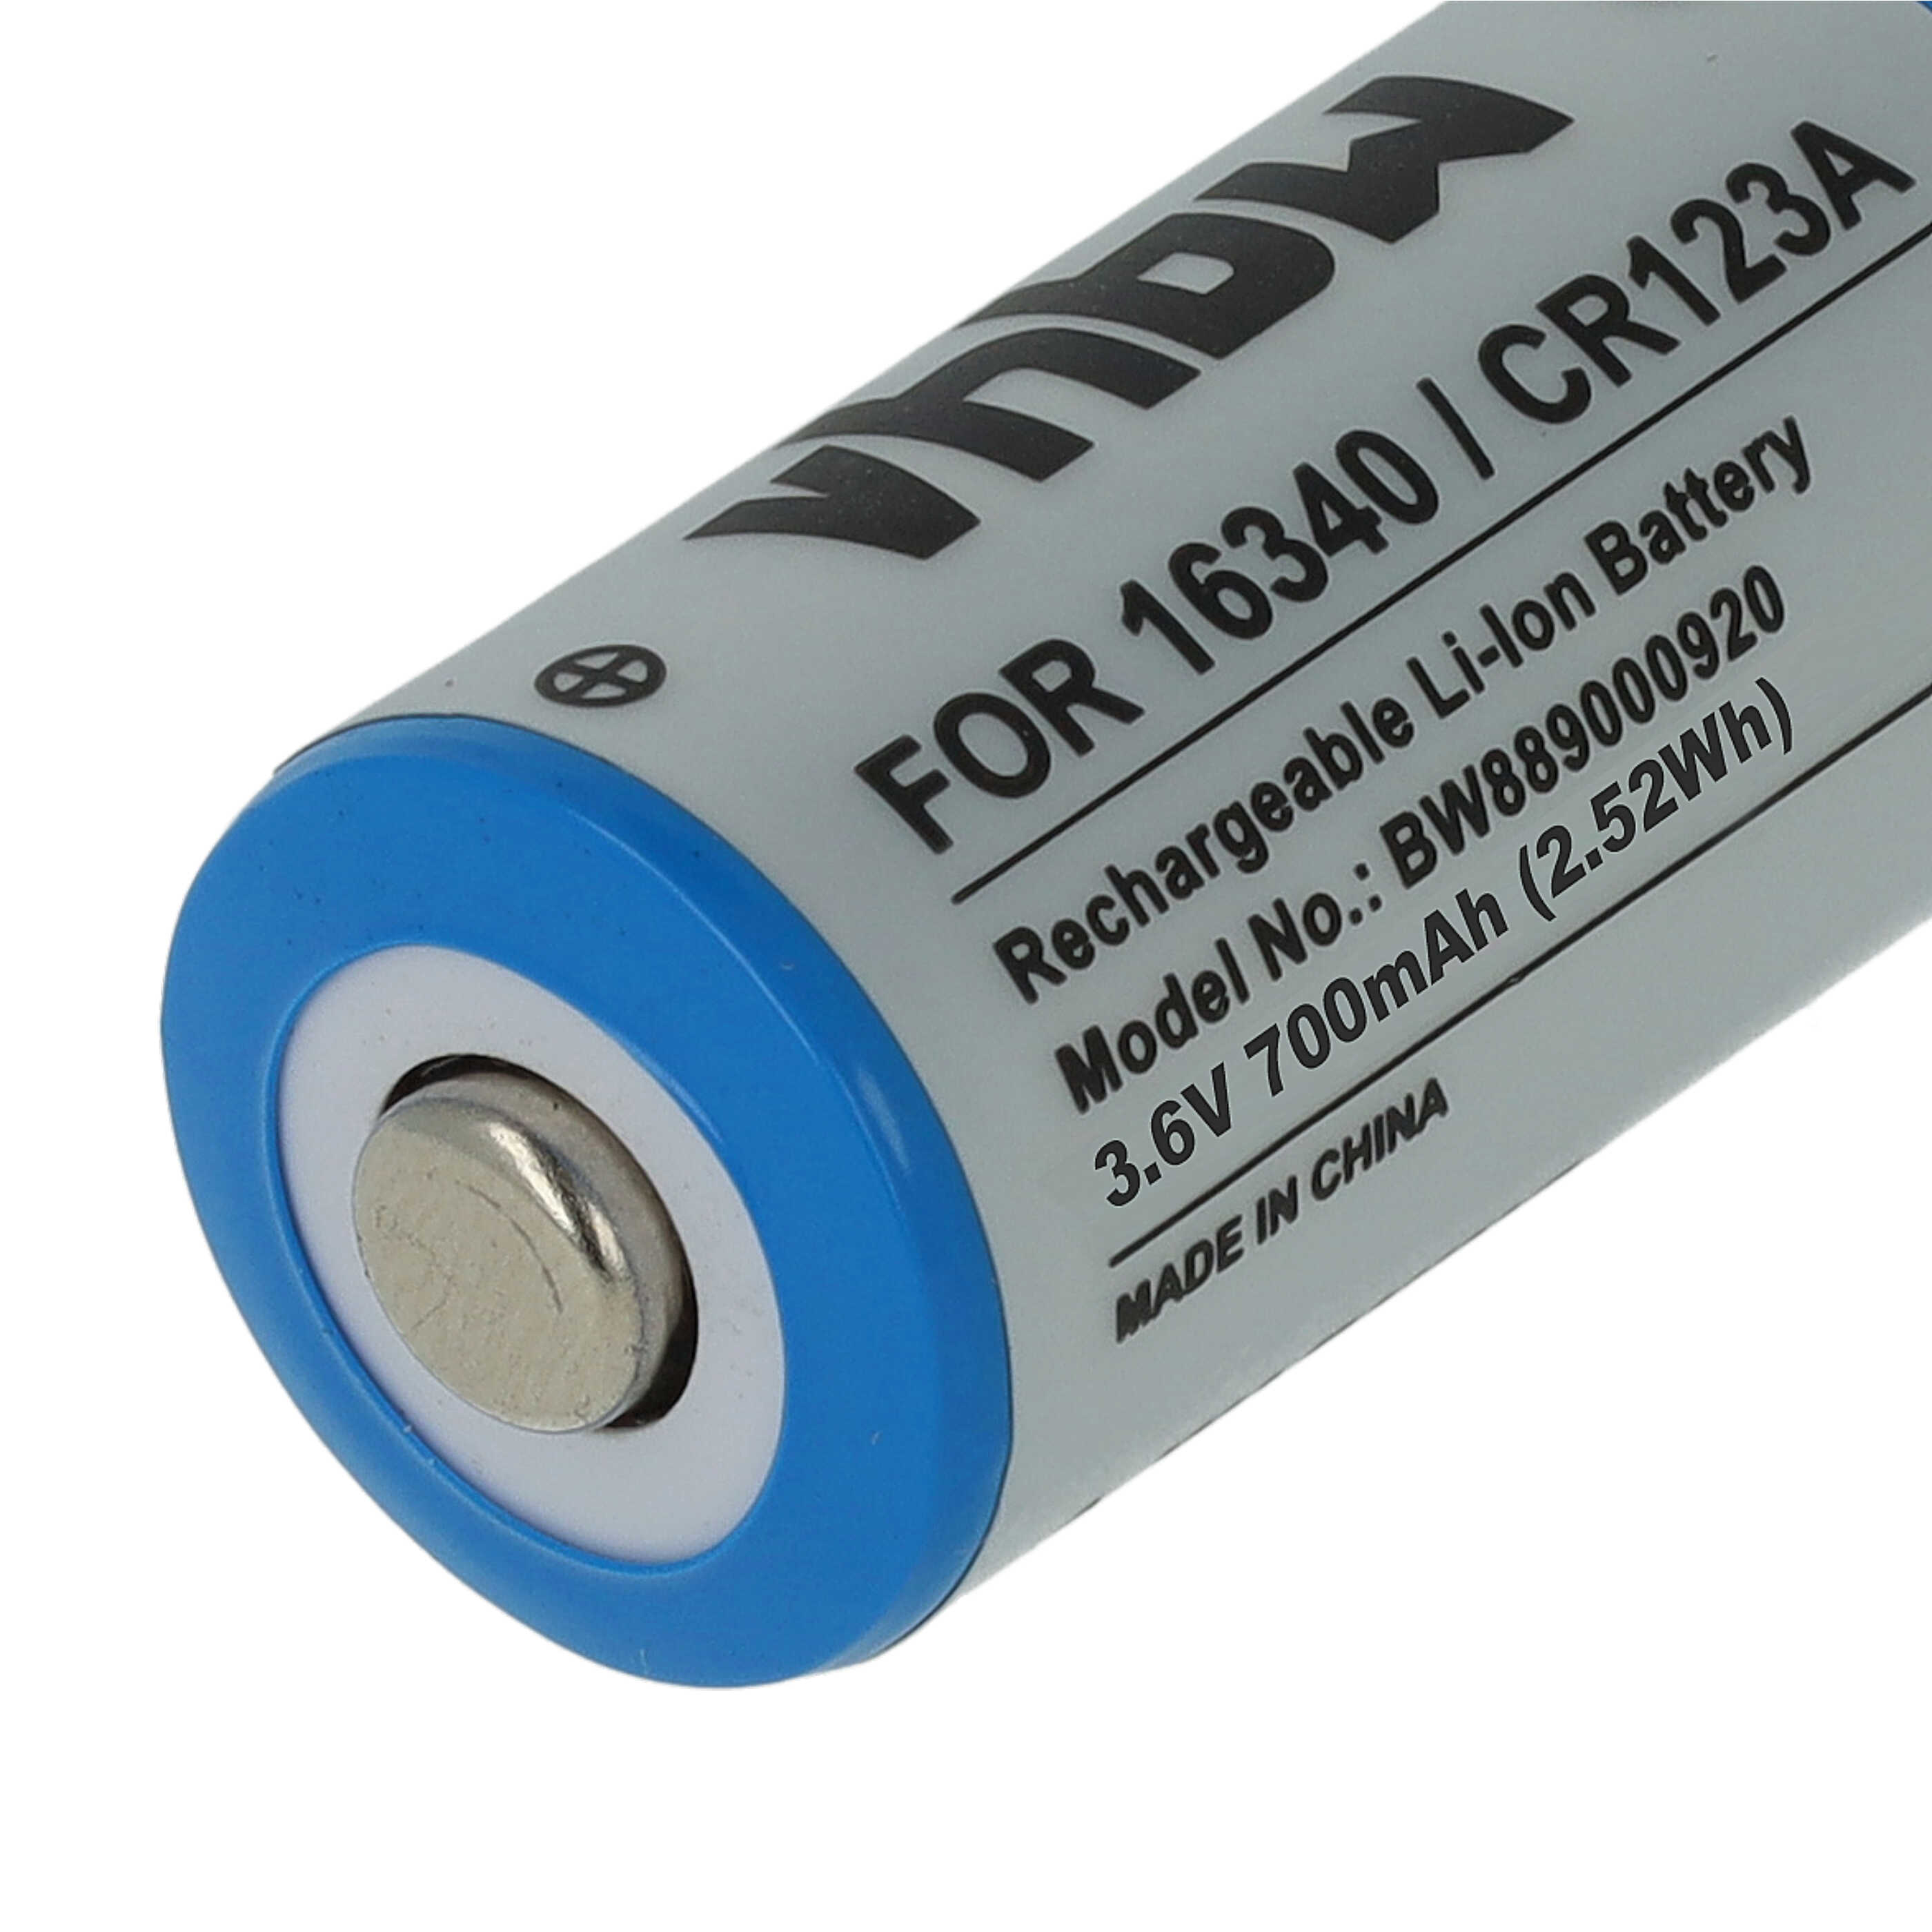 Batteries (3x pièces) remplace 16340, CR123R, CR17335, CR17345, CR123A - 700mAh 3,6V Li-ion, 1x cellules